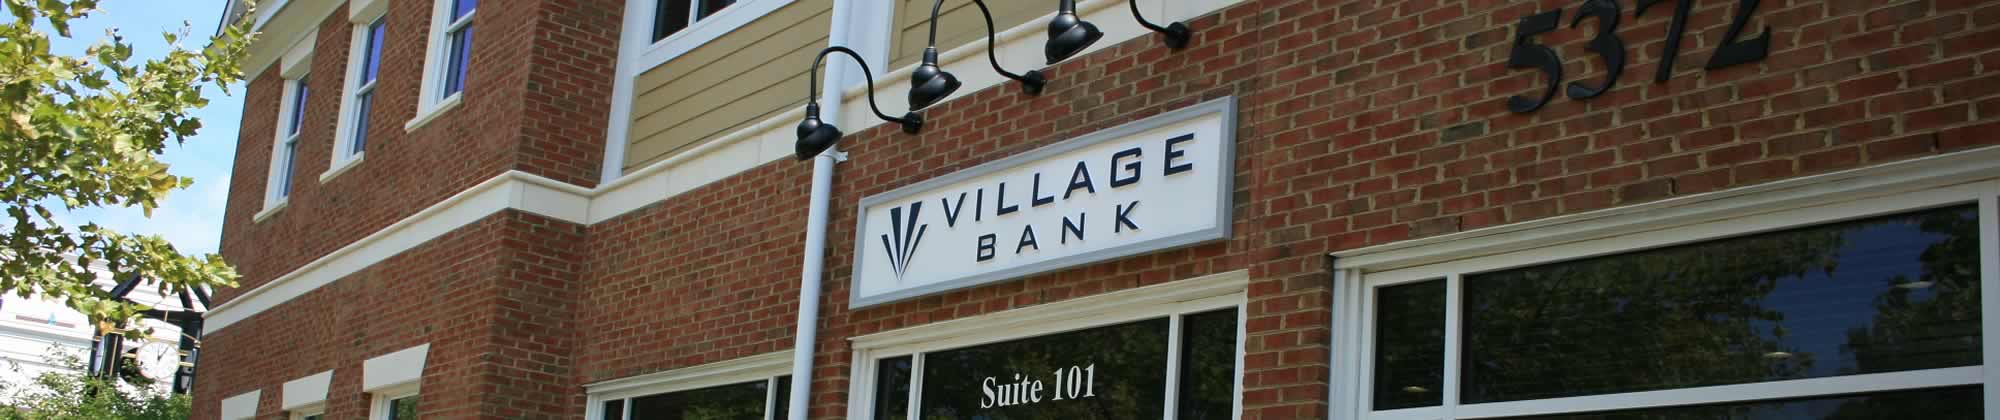 Village-Bank-Williamsburg-Branch